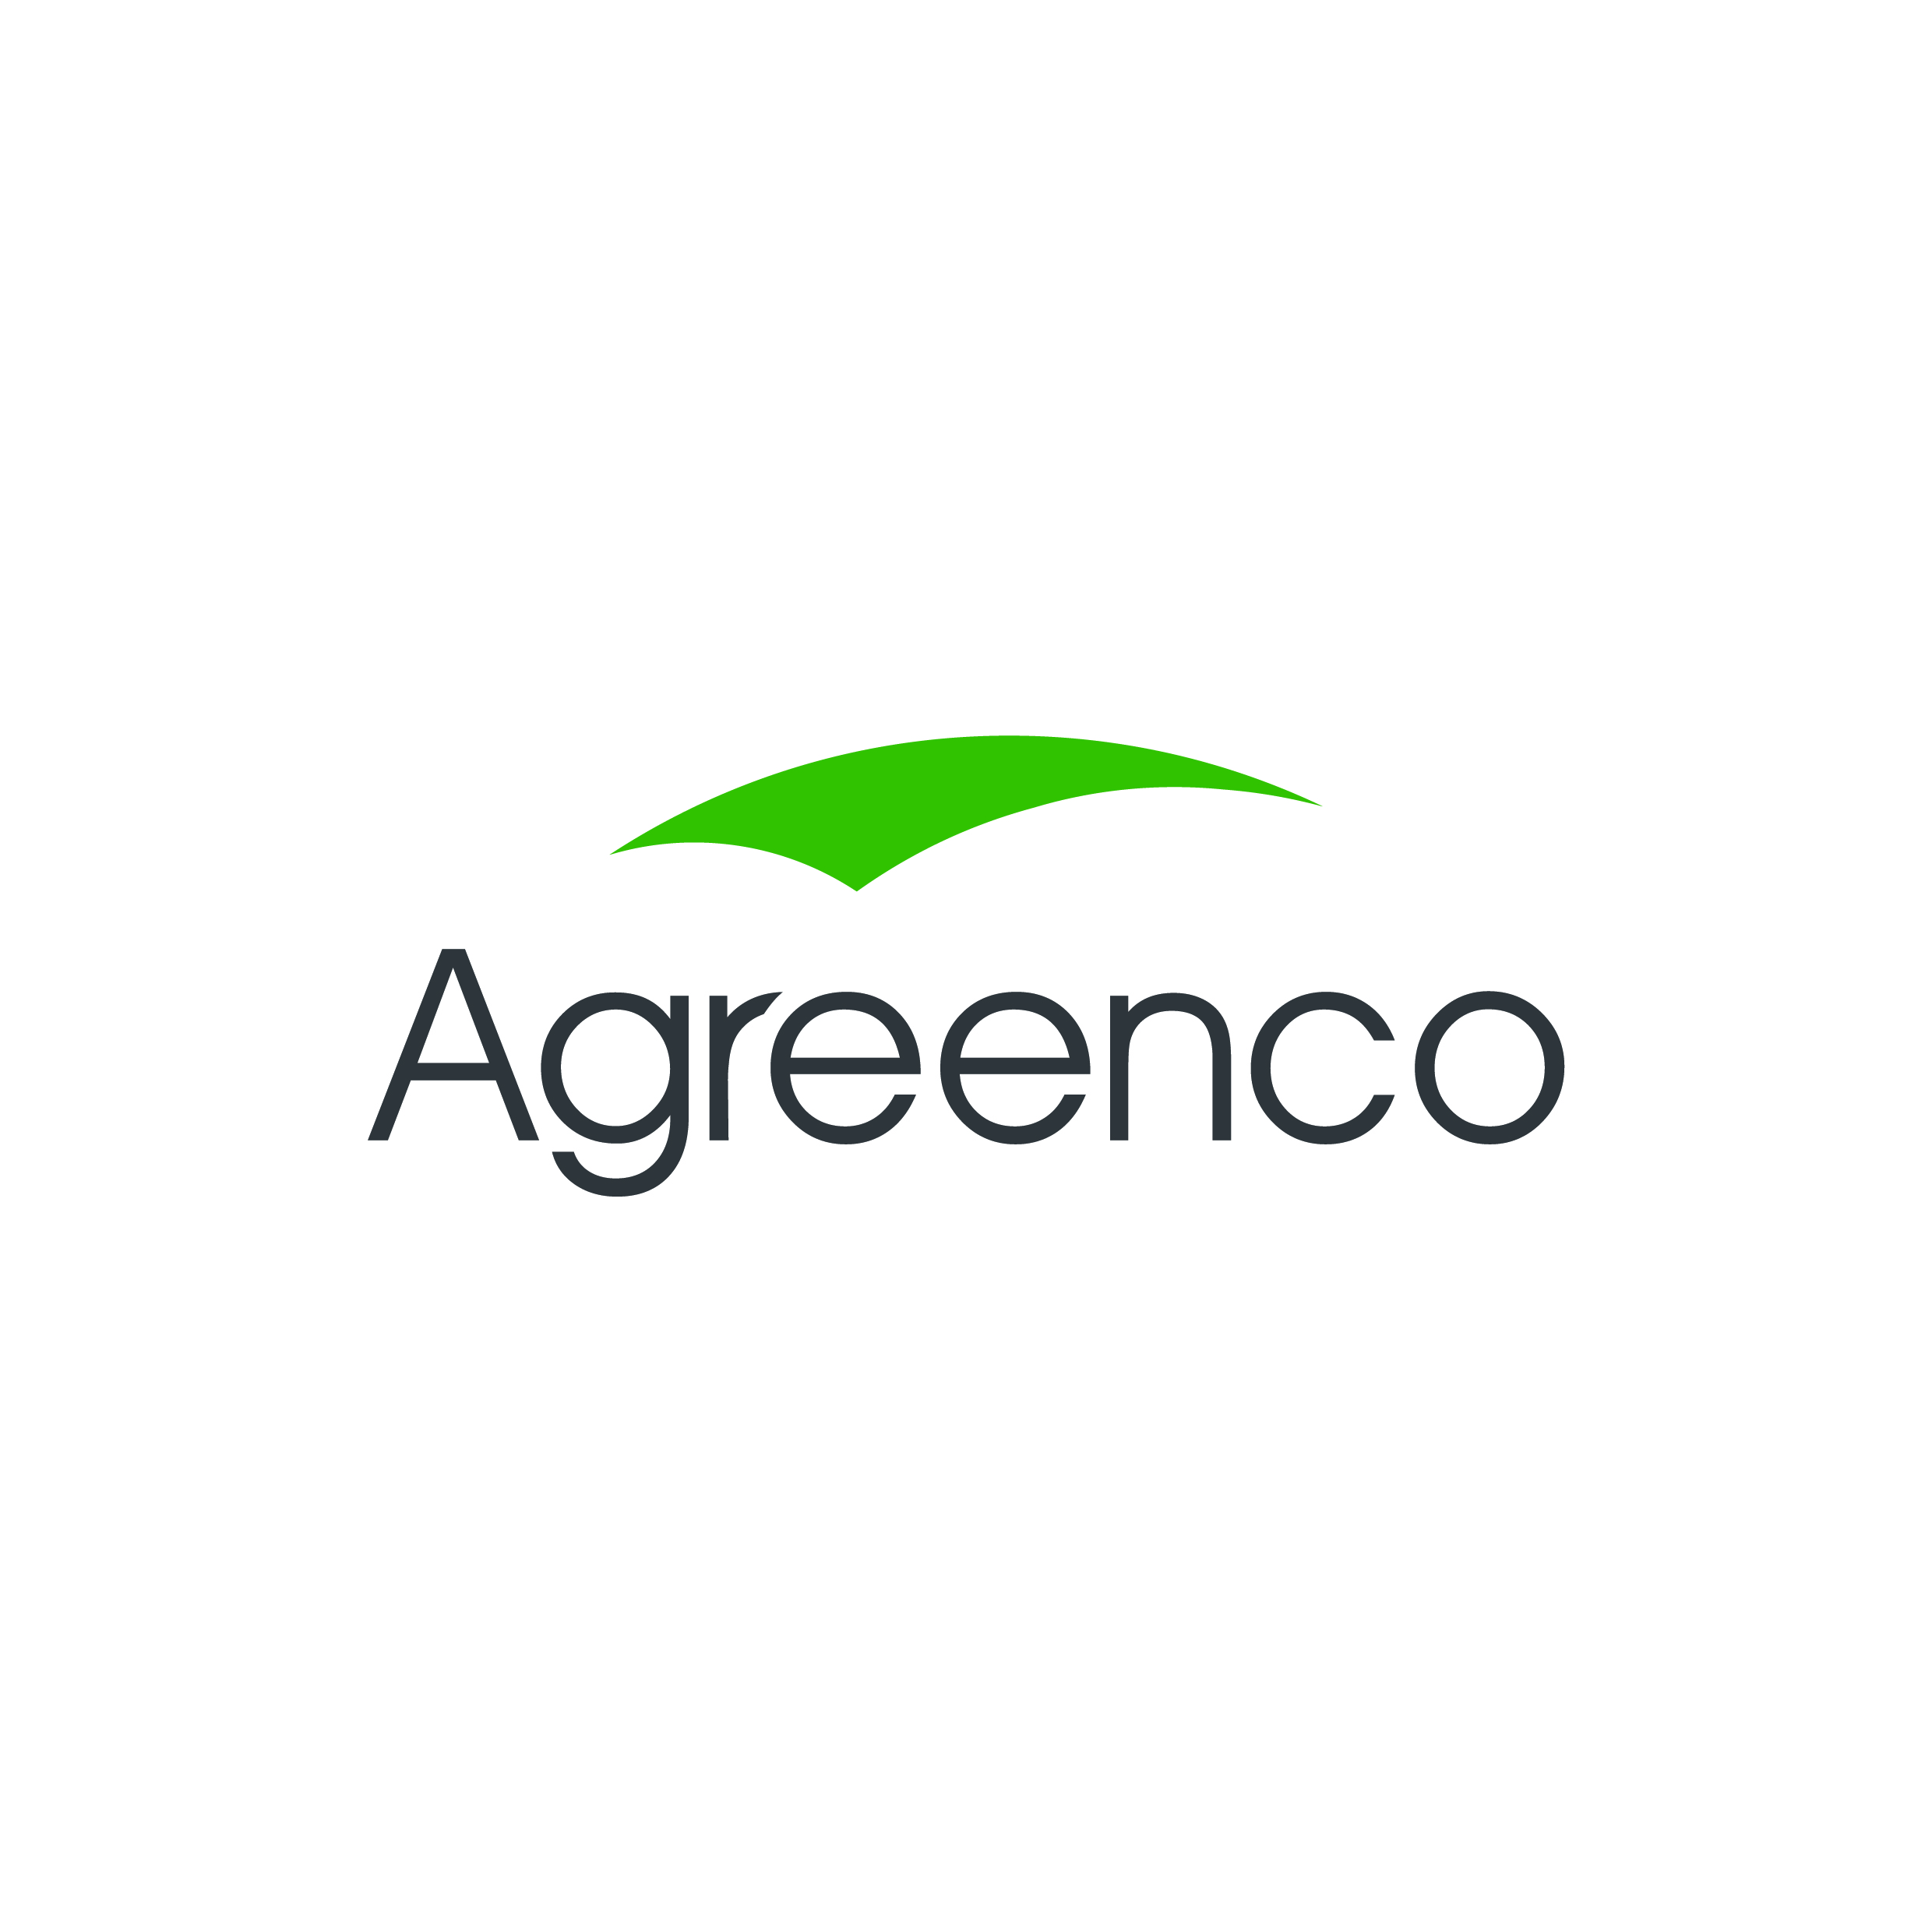 Agreenco Environmental CC logo